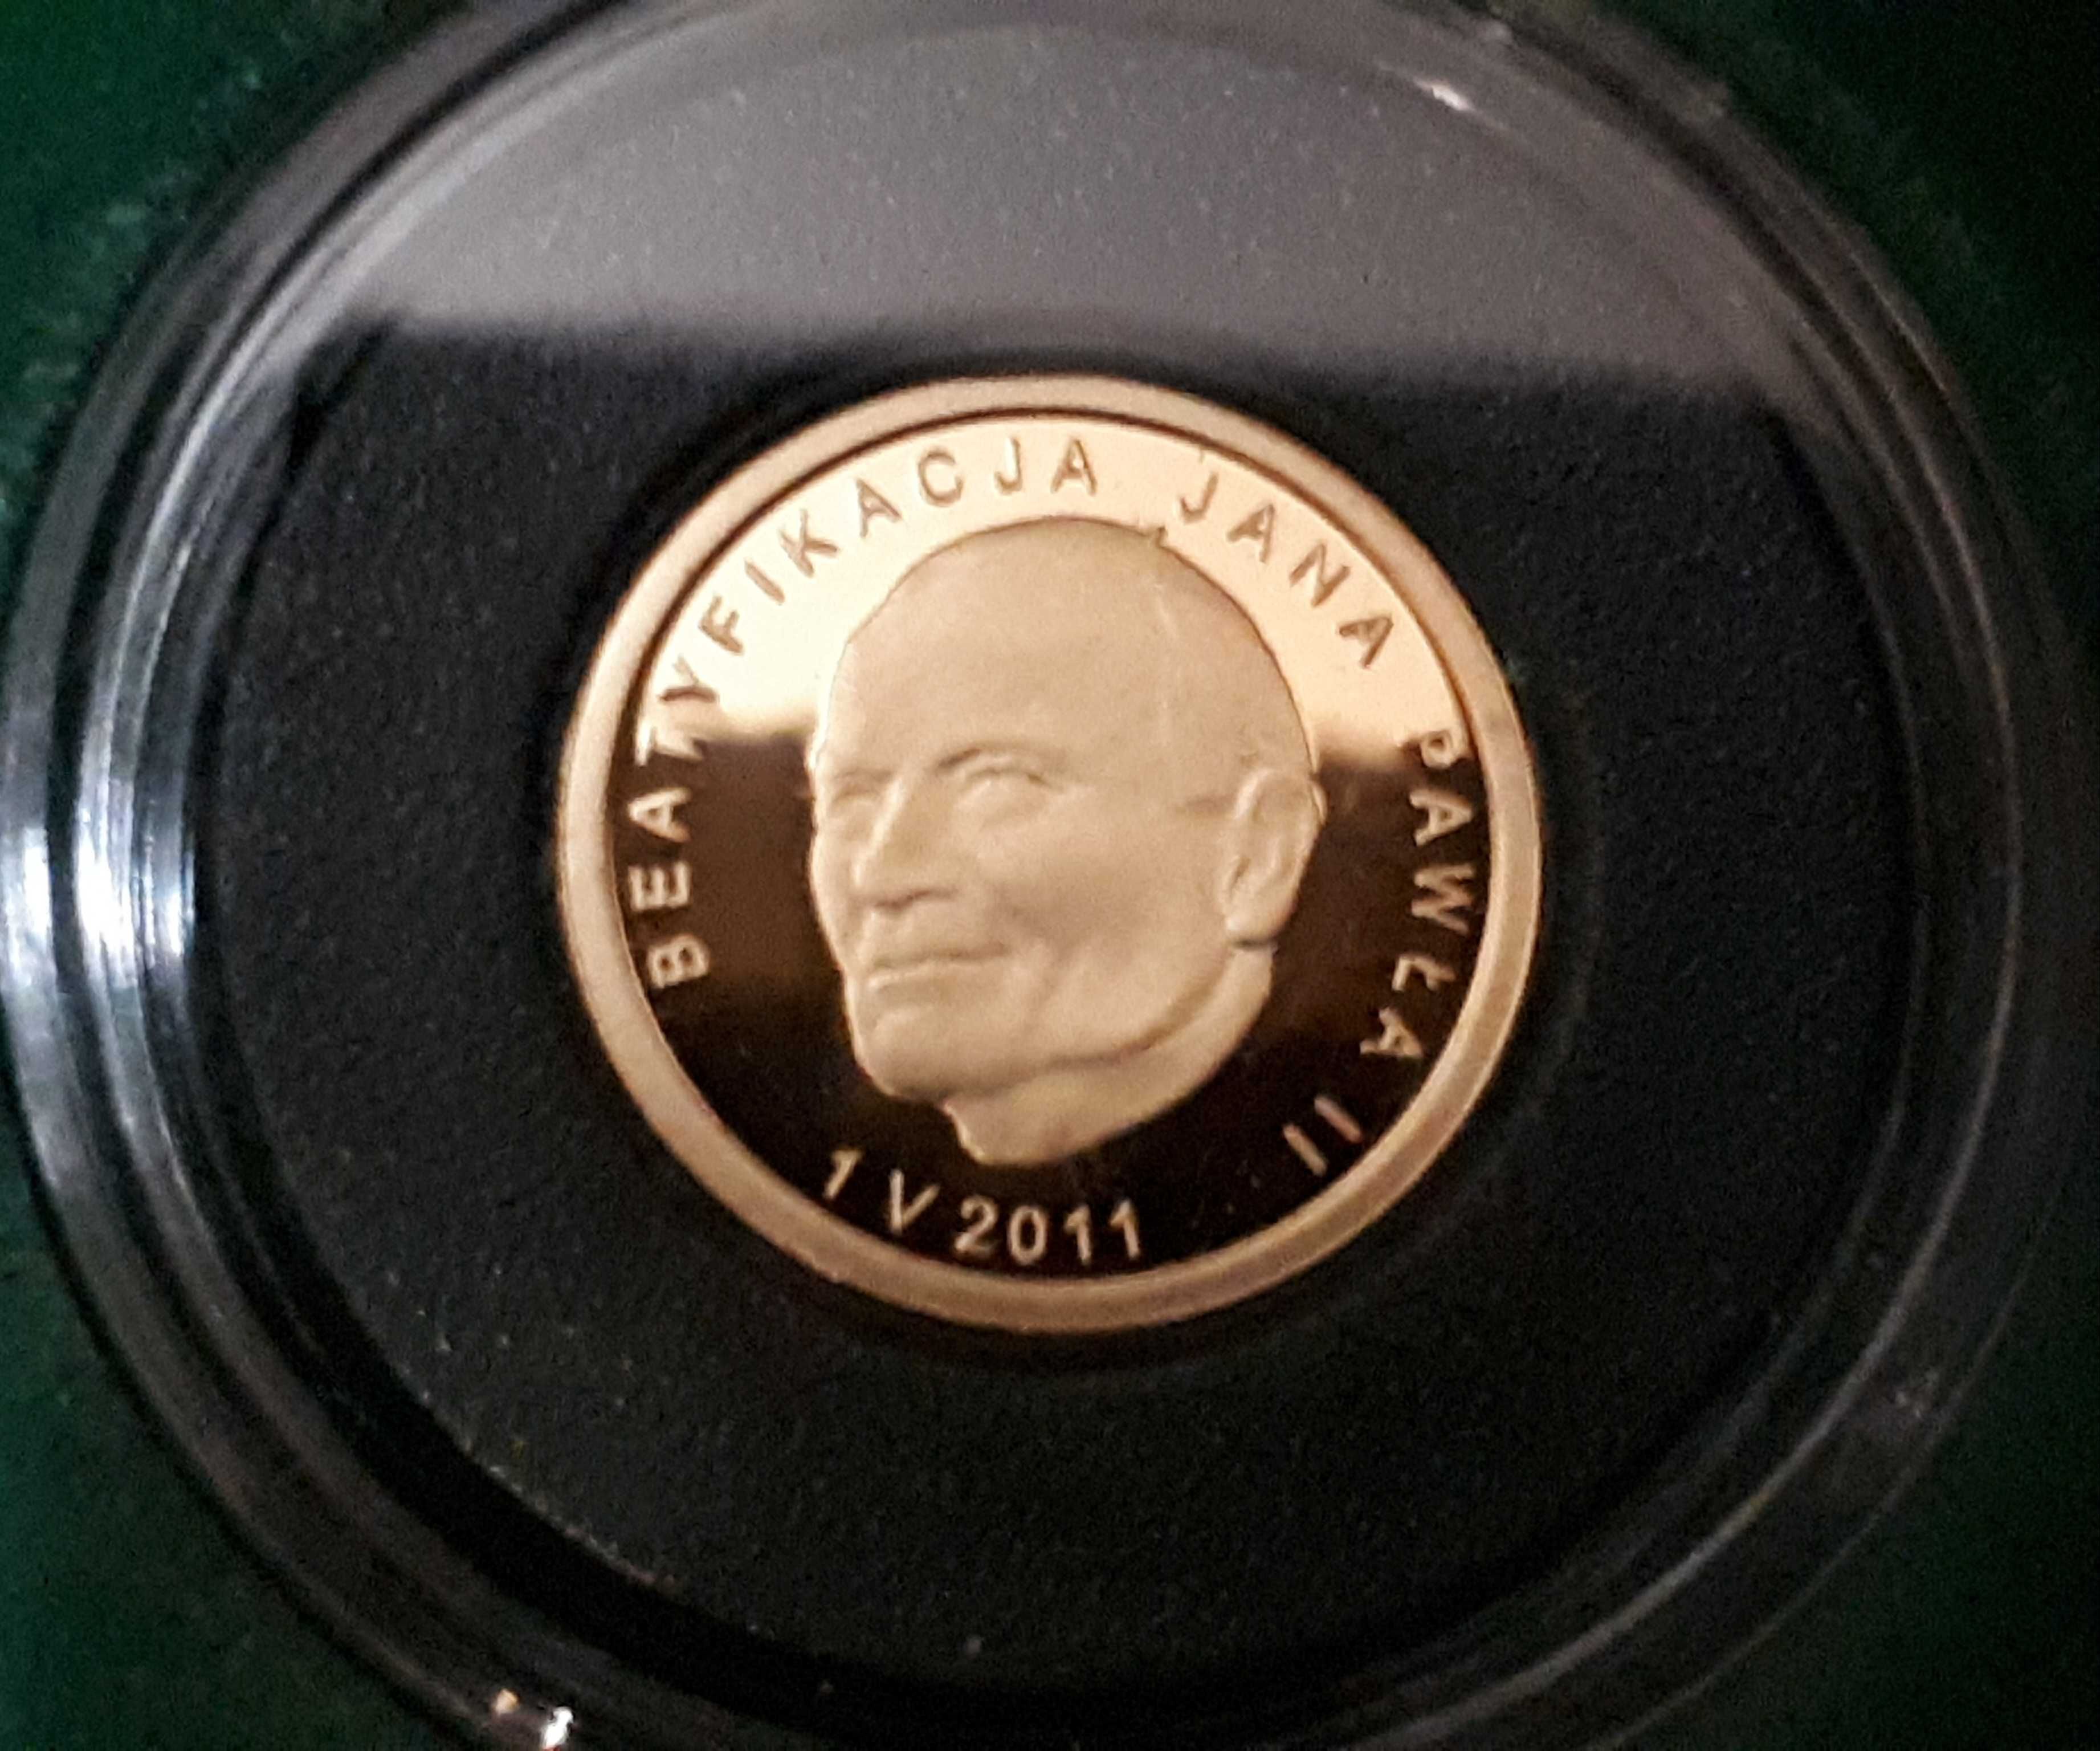 Złota Moneta - 25 zł - Beatyfikacja Jan Paweł II - 2011 r